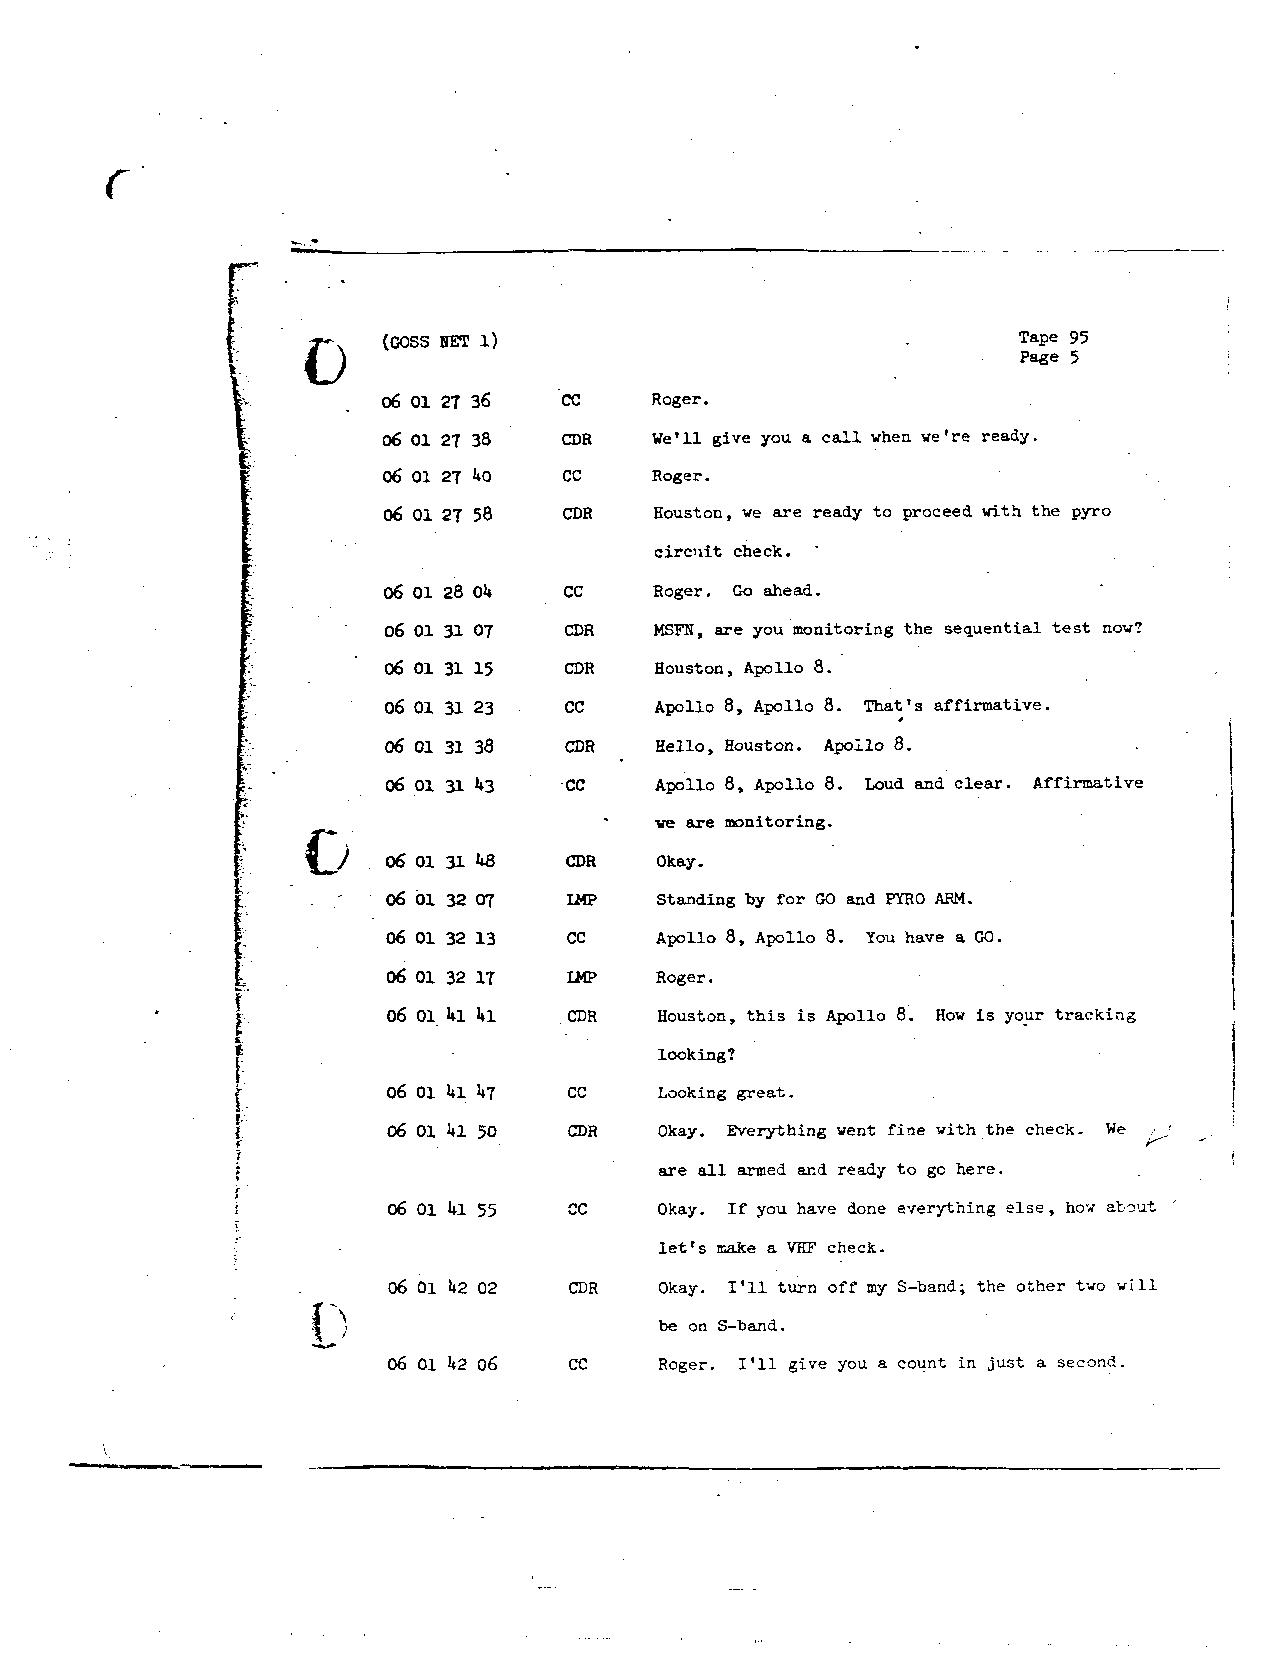 Page 751 of Apollo 8’s original transcript